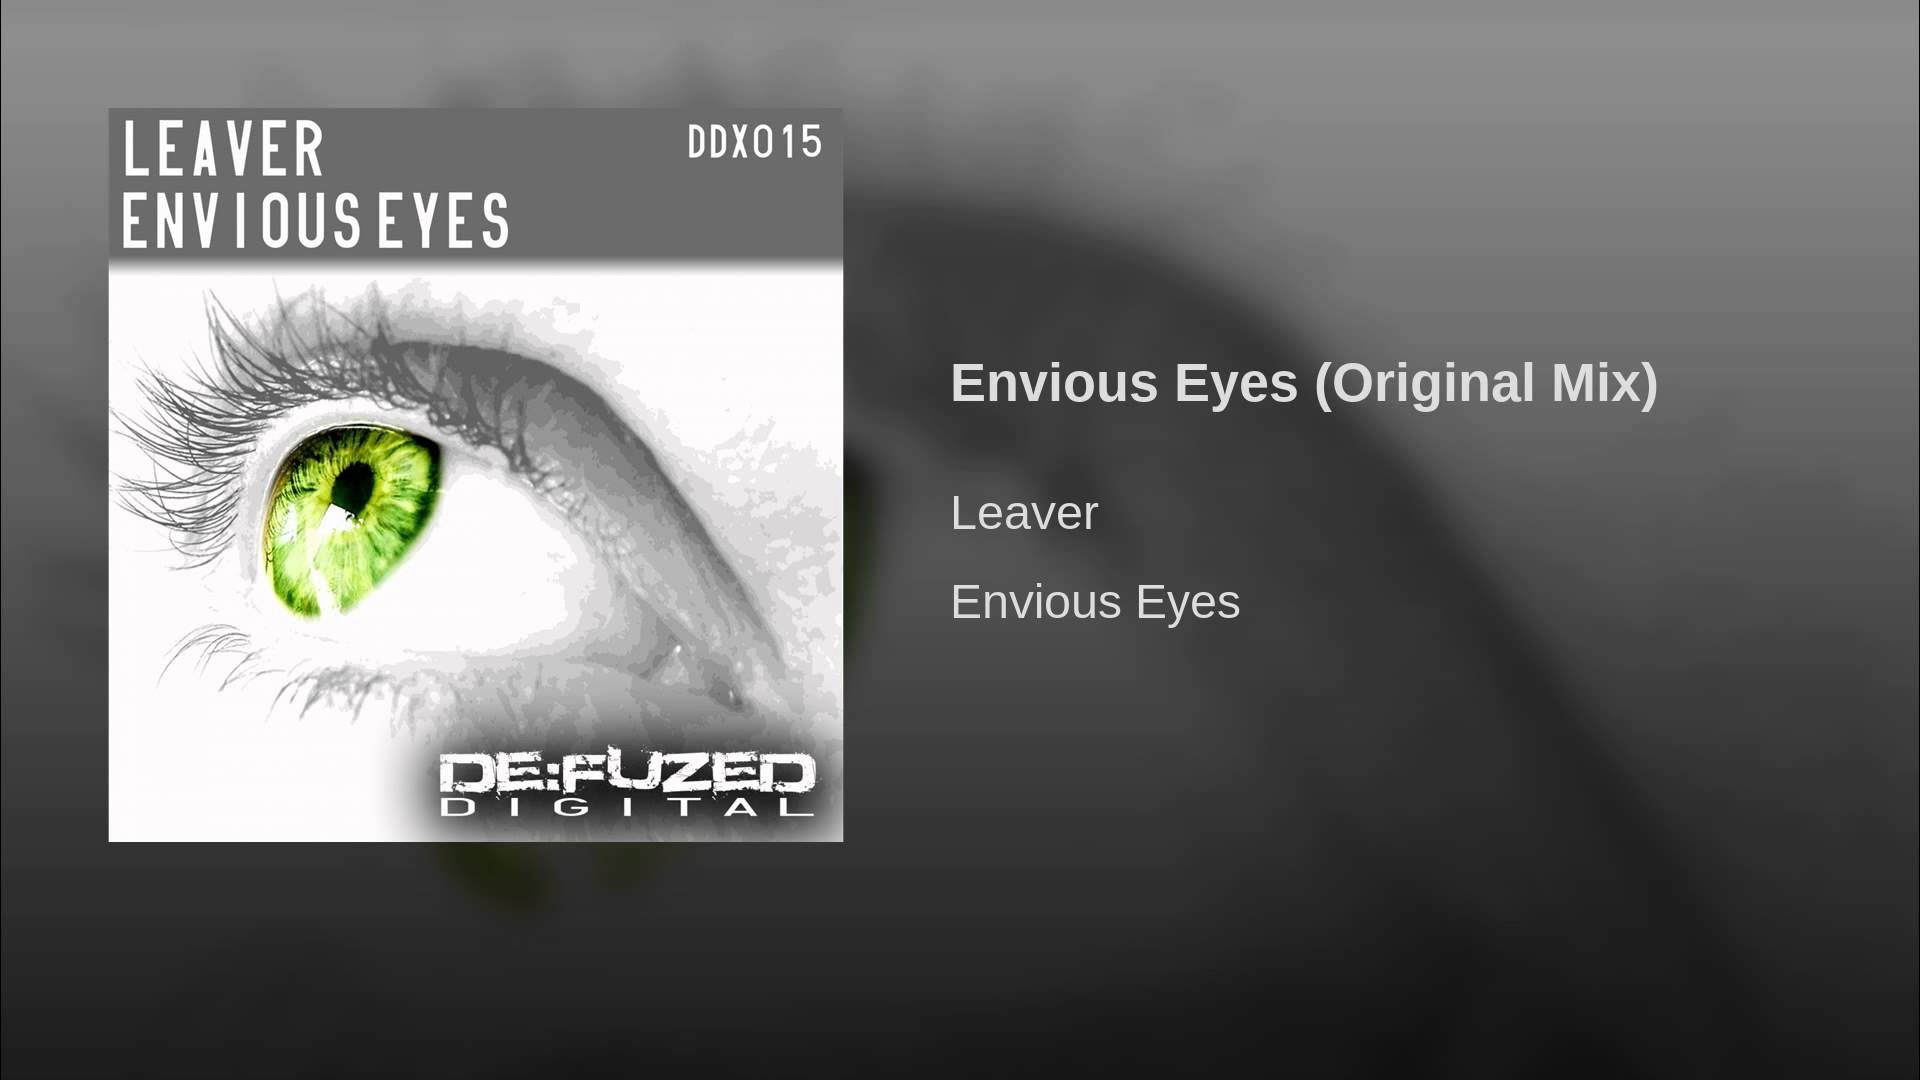 Envious Eyes (Original Mix) - YouTube